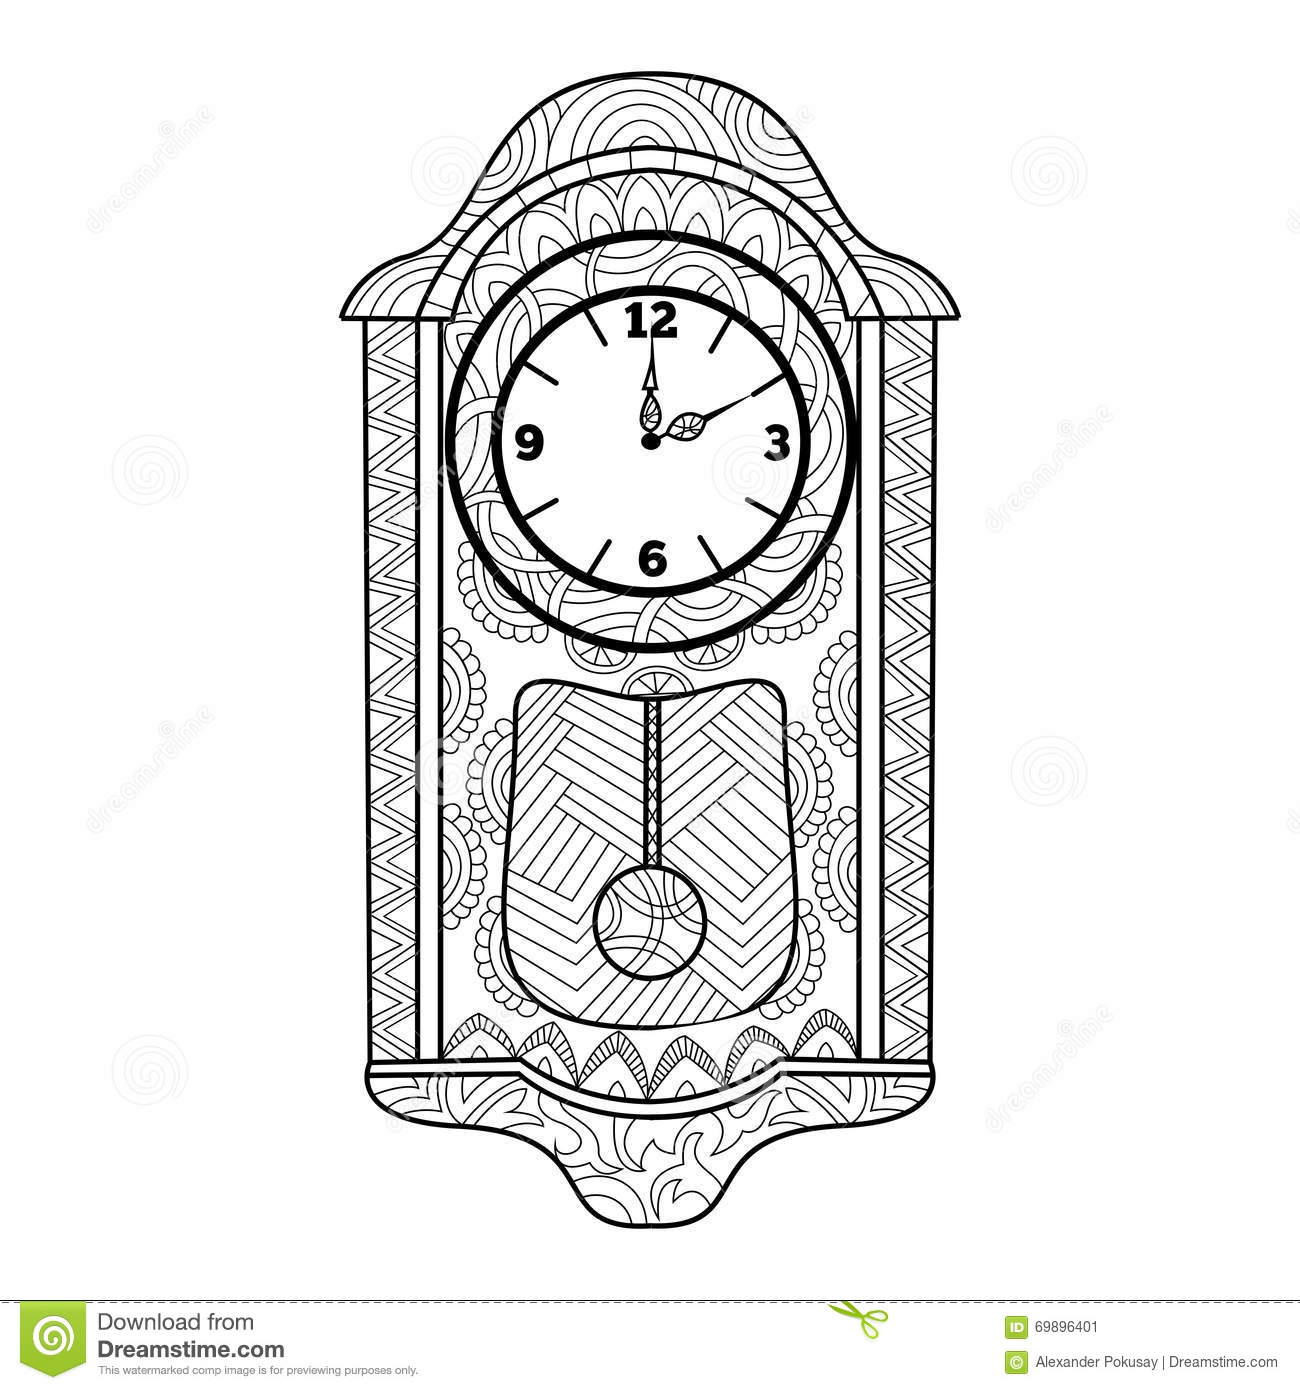 Livre De Coloriage D&amp;#039;Horloge De Pendule Pour Le Vecteur D&amp;#039;Adultes concernant Coloriage Horloge 